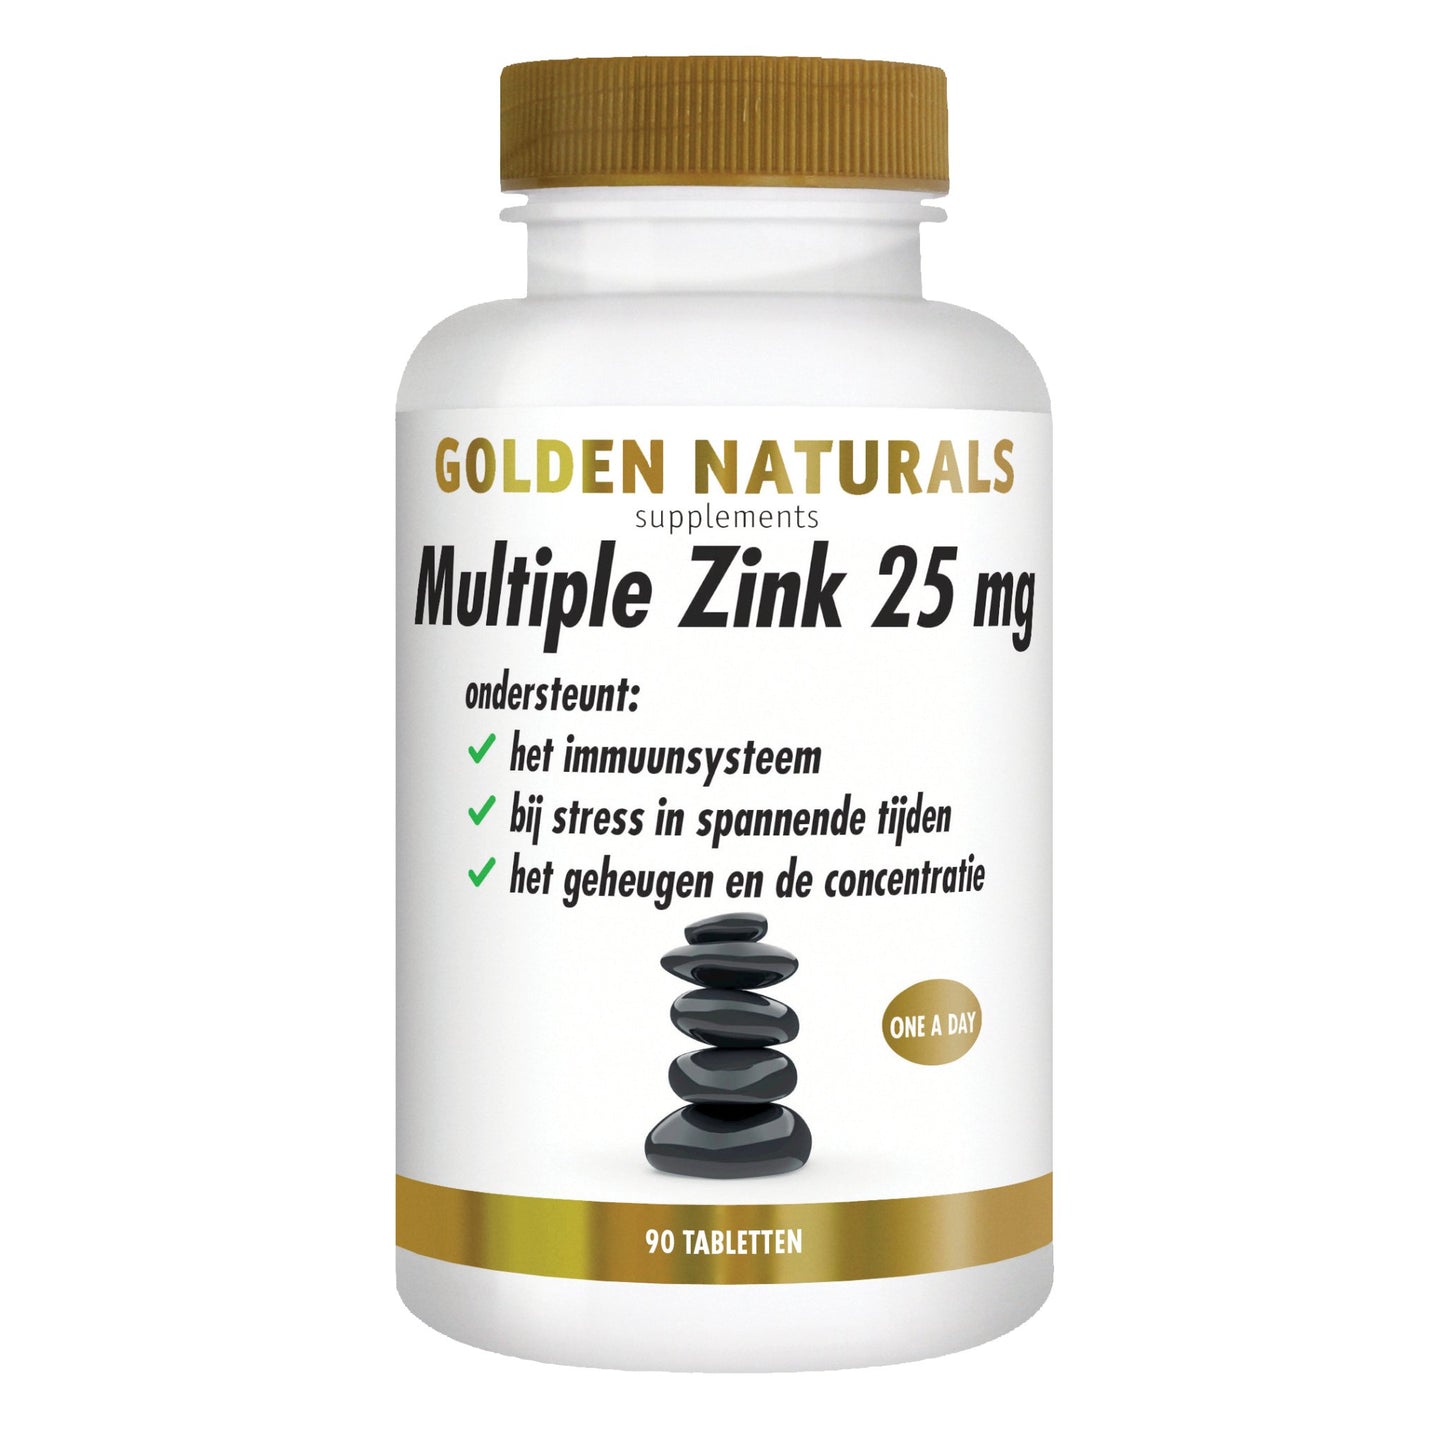 Multiple Zink 25 mg - 90 - veganistische tabletten Supplement Golden Naturals   